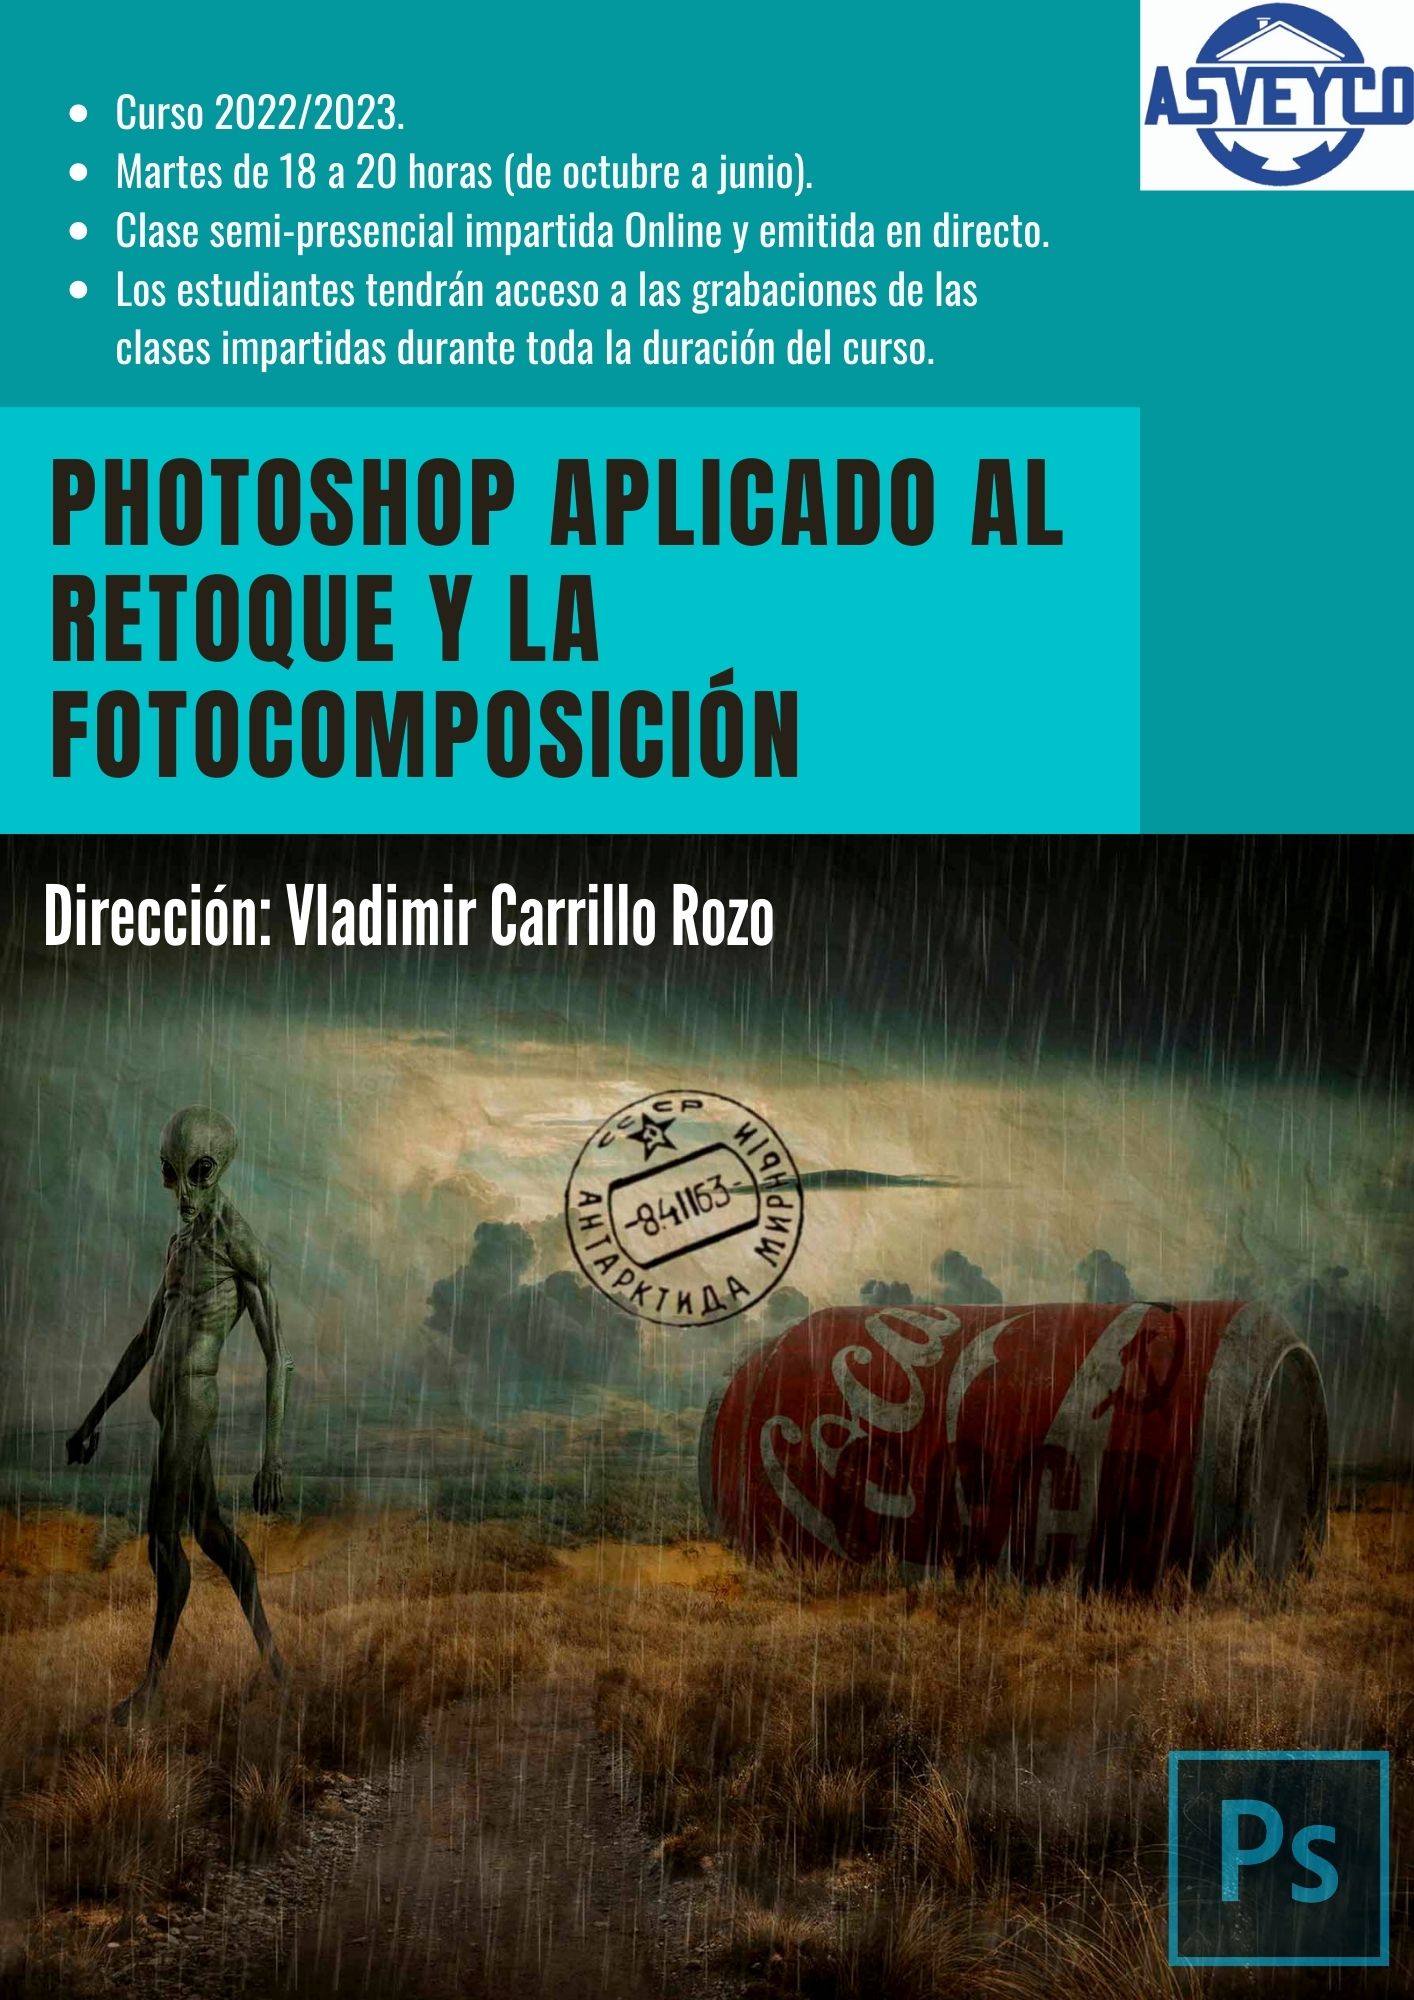 PHOTOSHOP APLICADO AL RETOQUE Y LA FOTOCOMPOSICIÓN